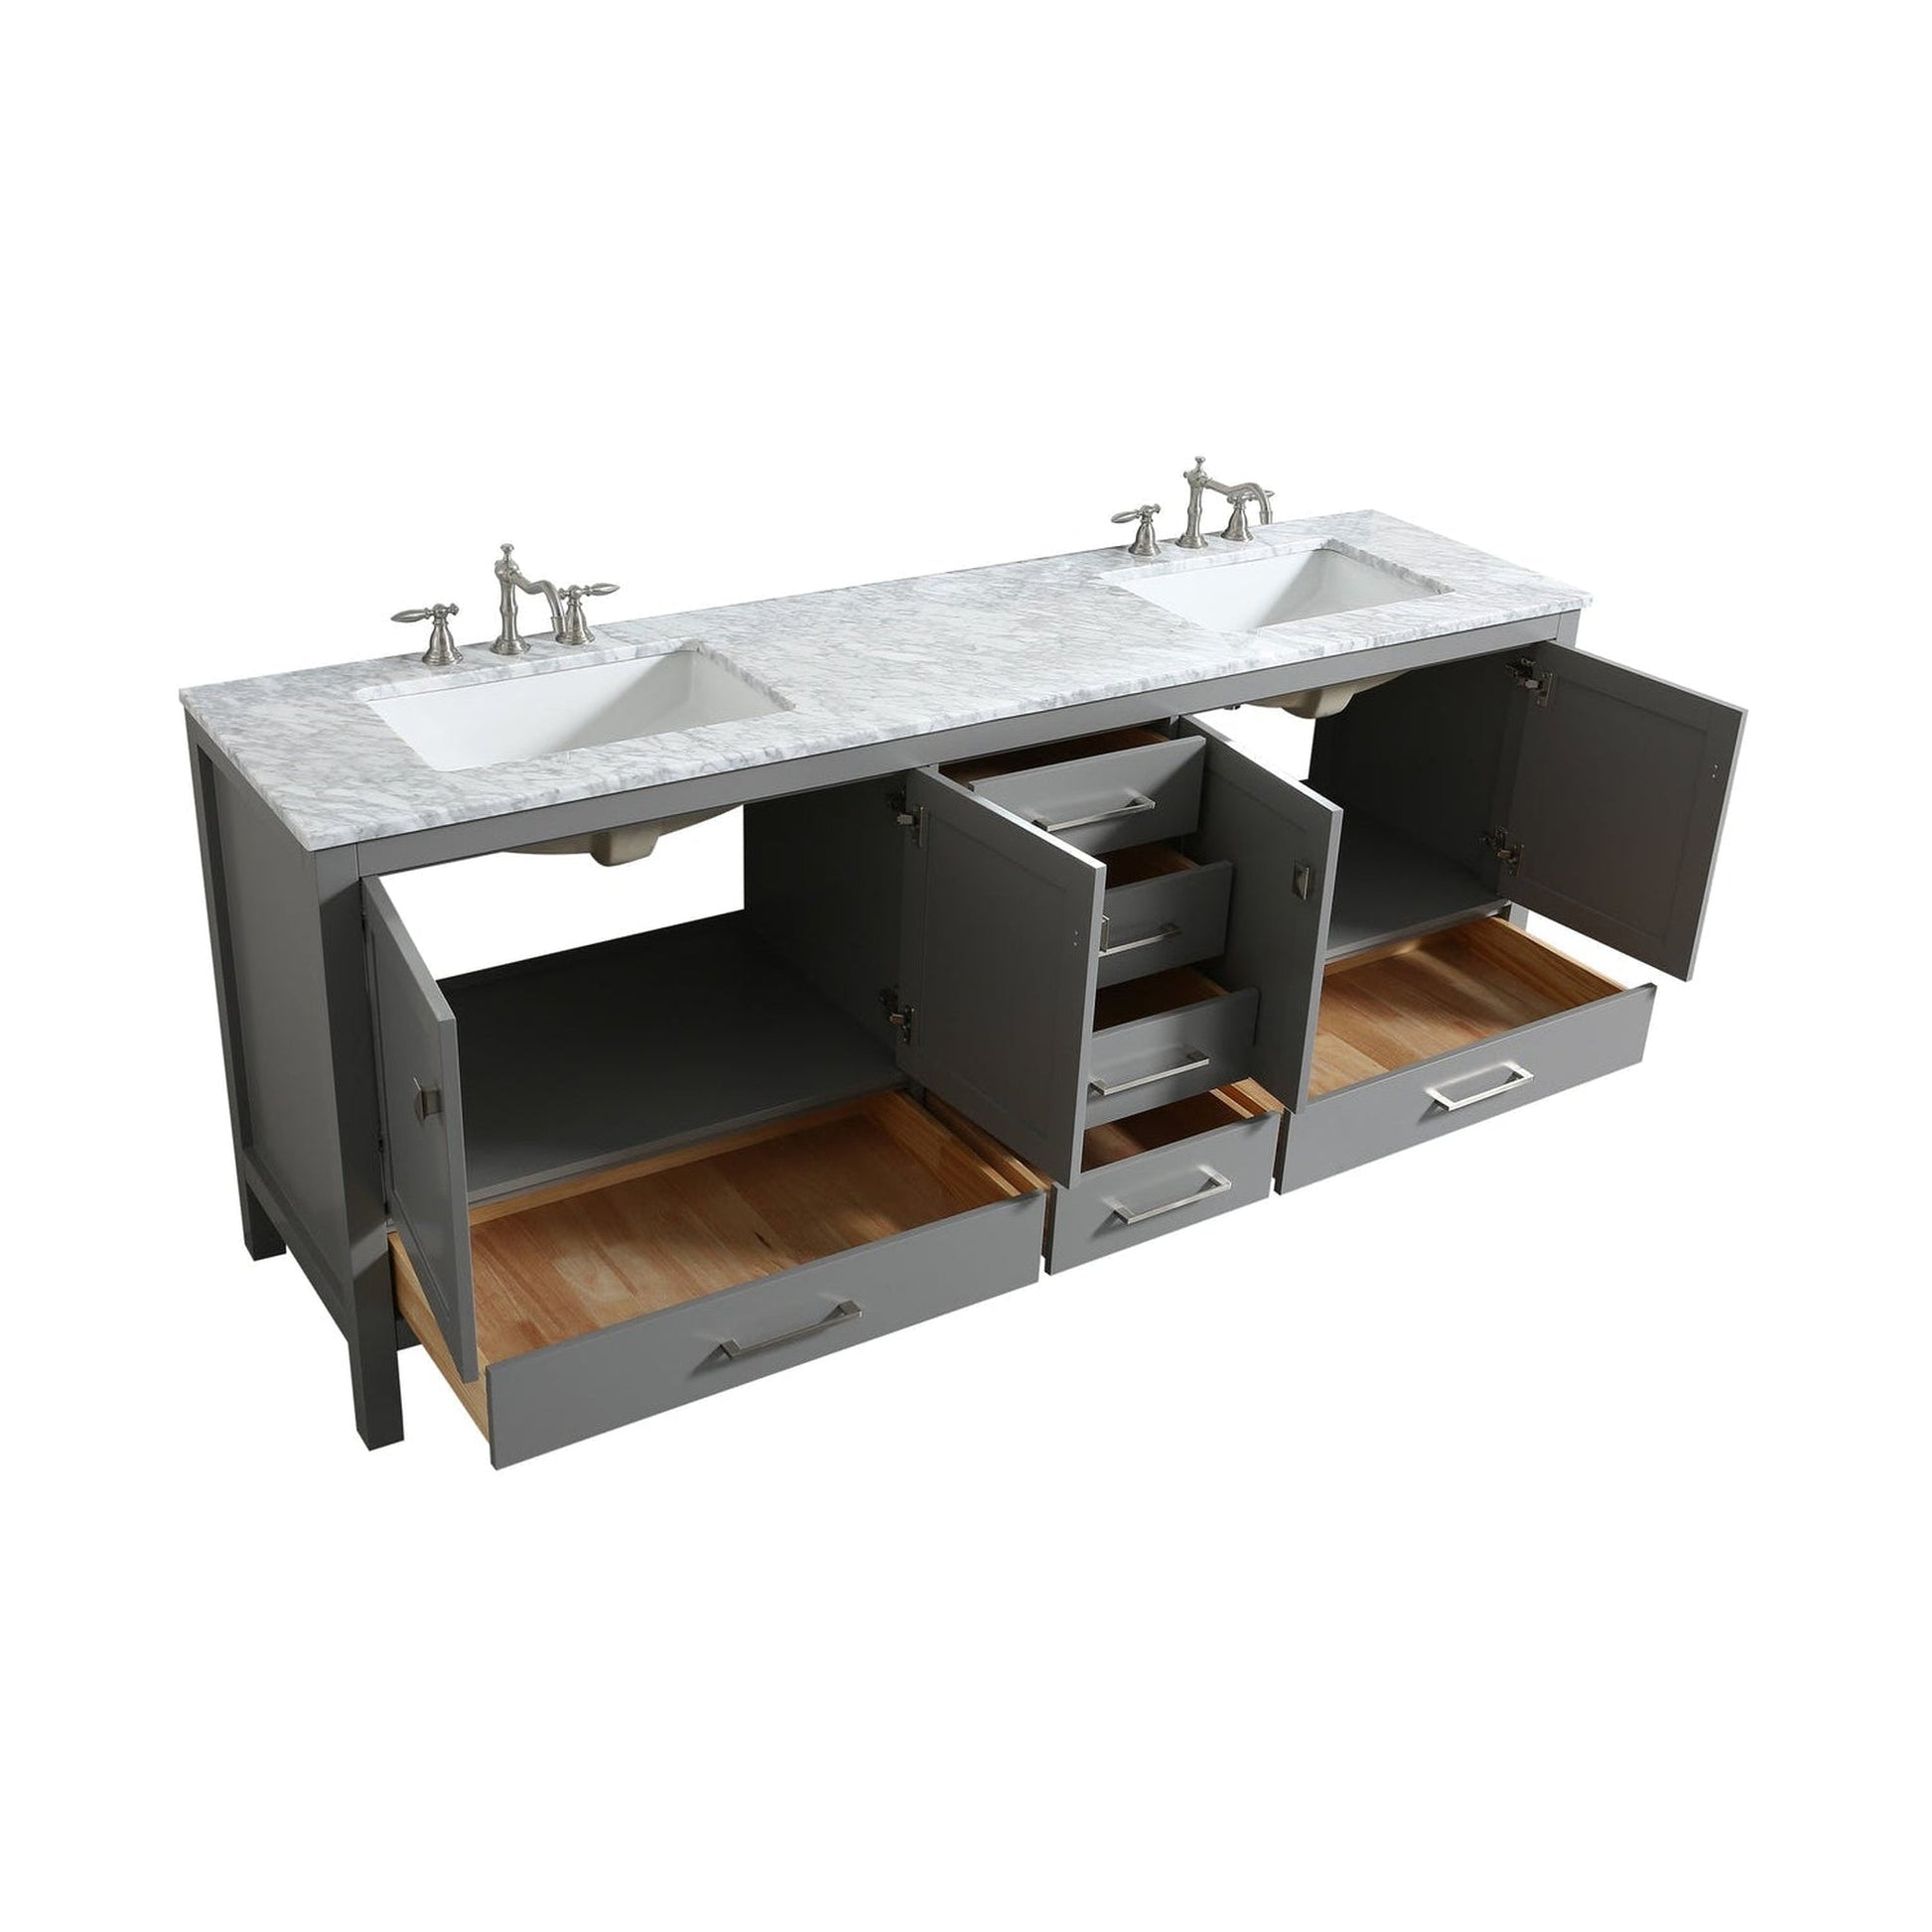 Eviva Aberdeen 60" x 34" Gray Freestanding Bathroom Vanity With Double Undermount Sink